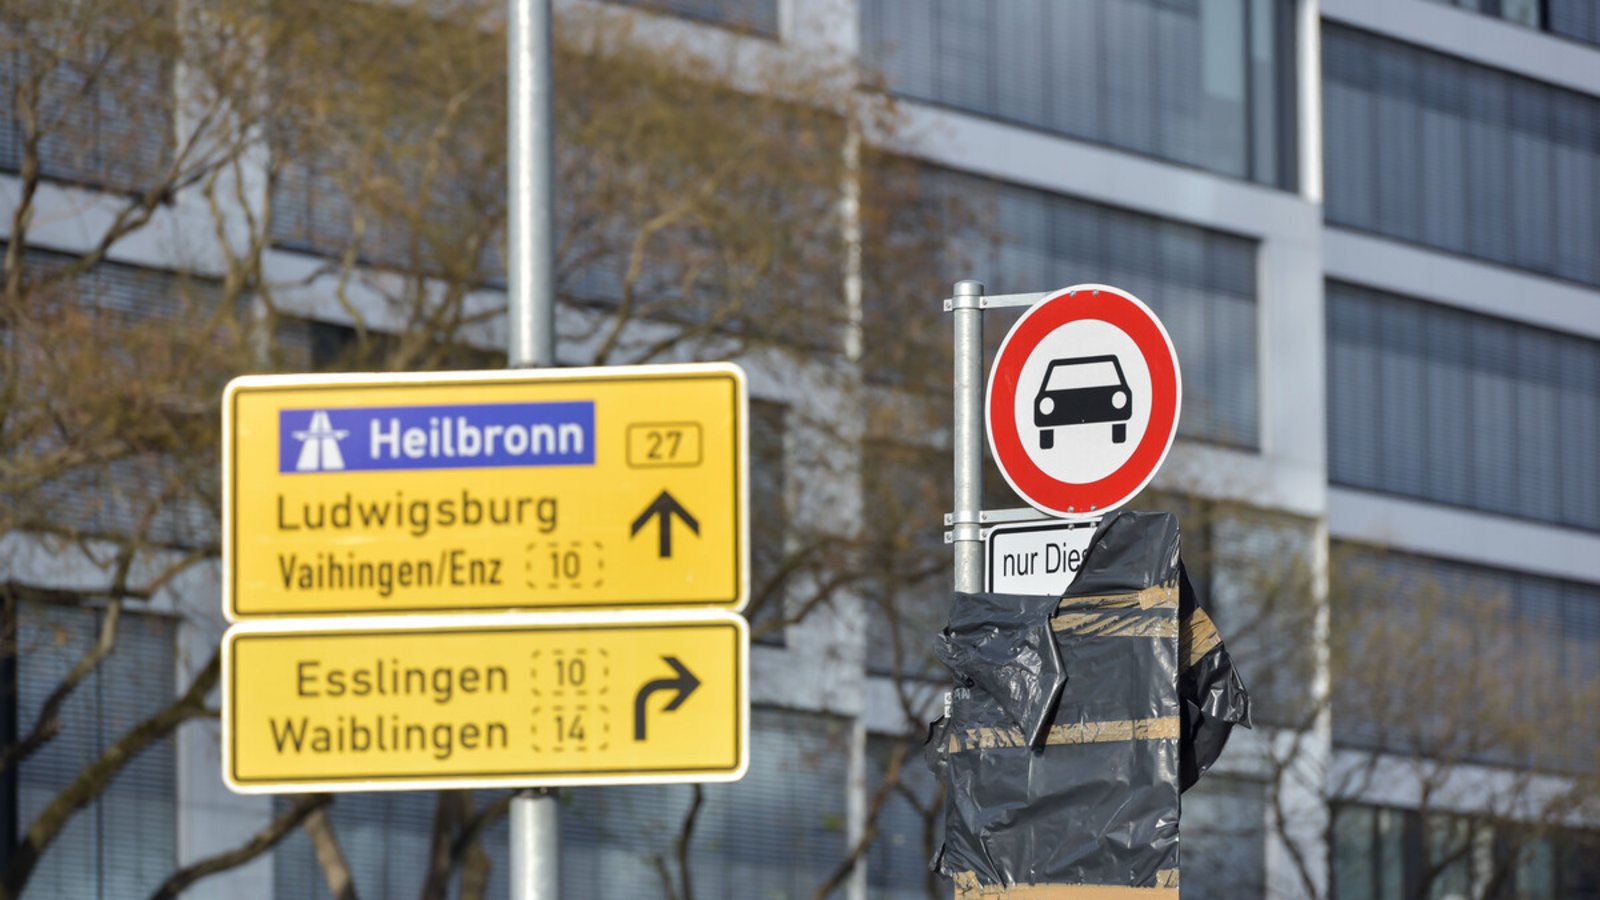 Die Fahrverbote in Stuttgart sorgen wieder für Diskussionen.Foto: Lichtgut/Max Kovalenko